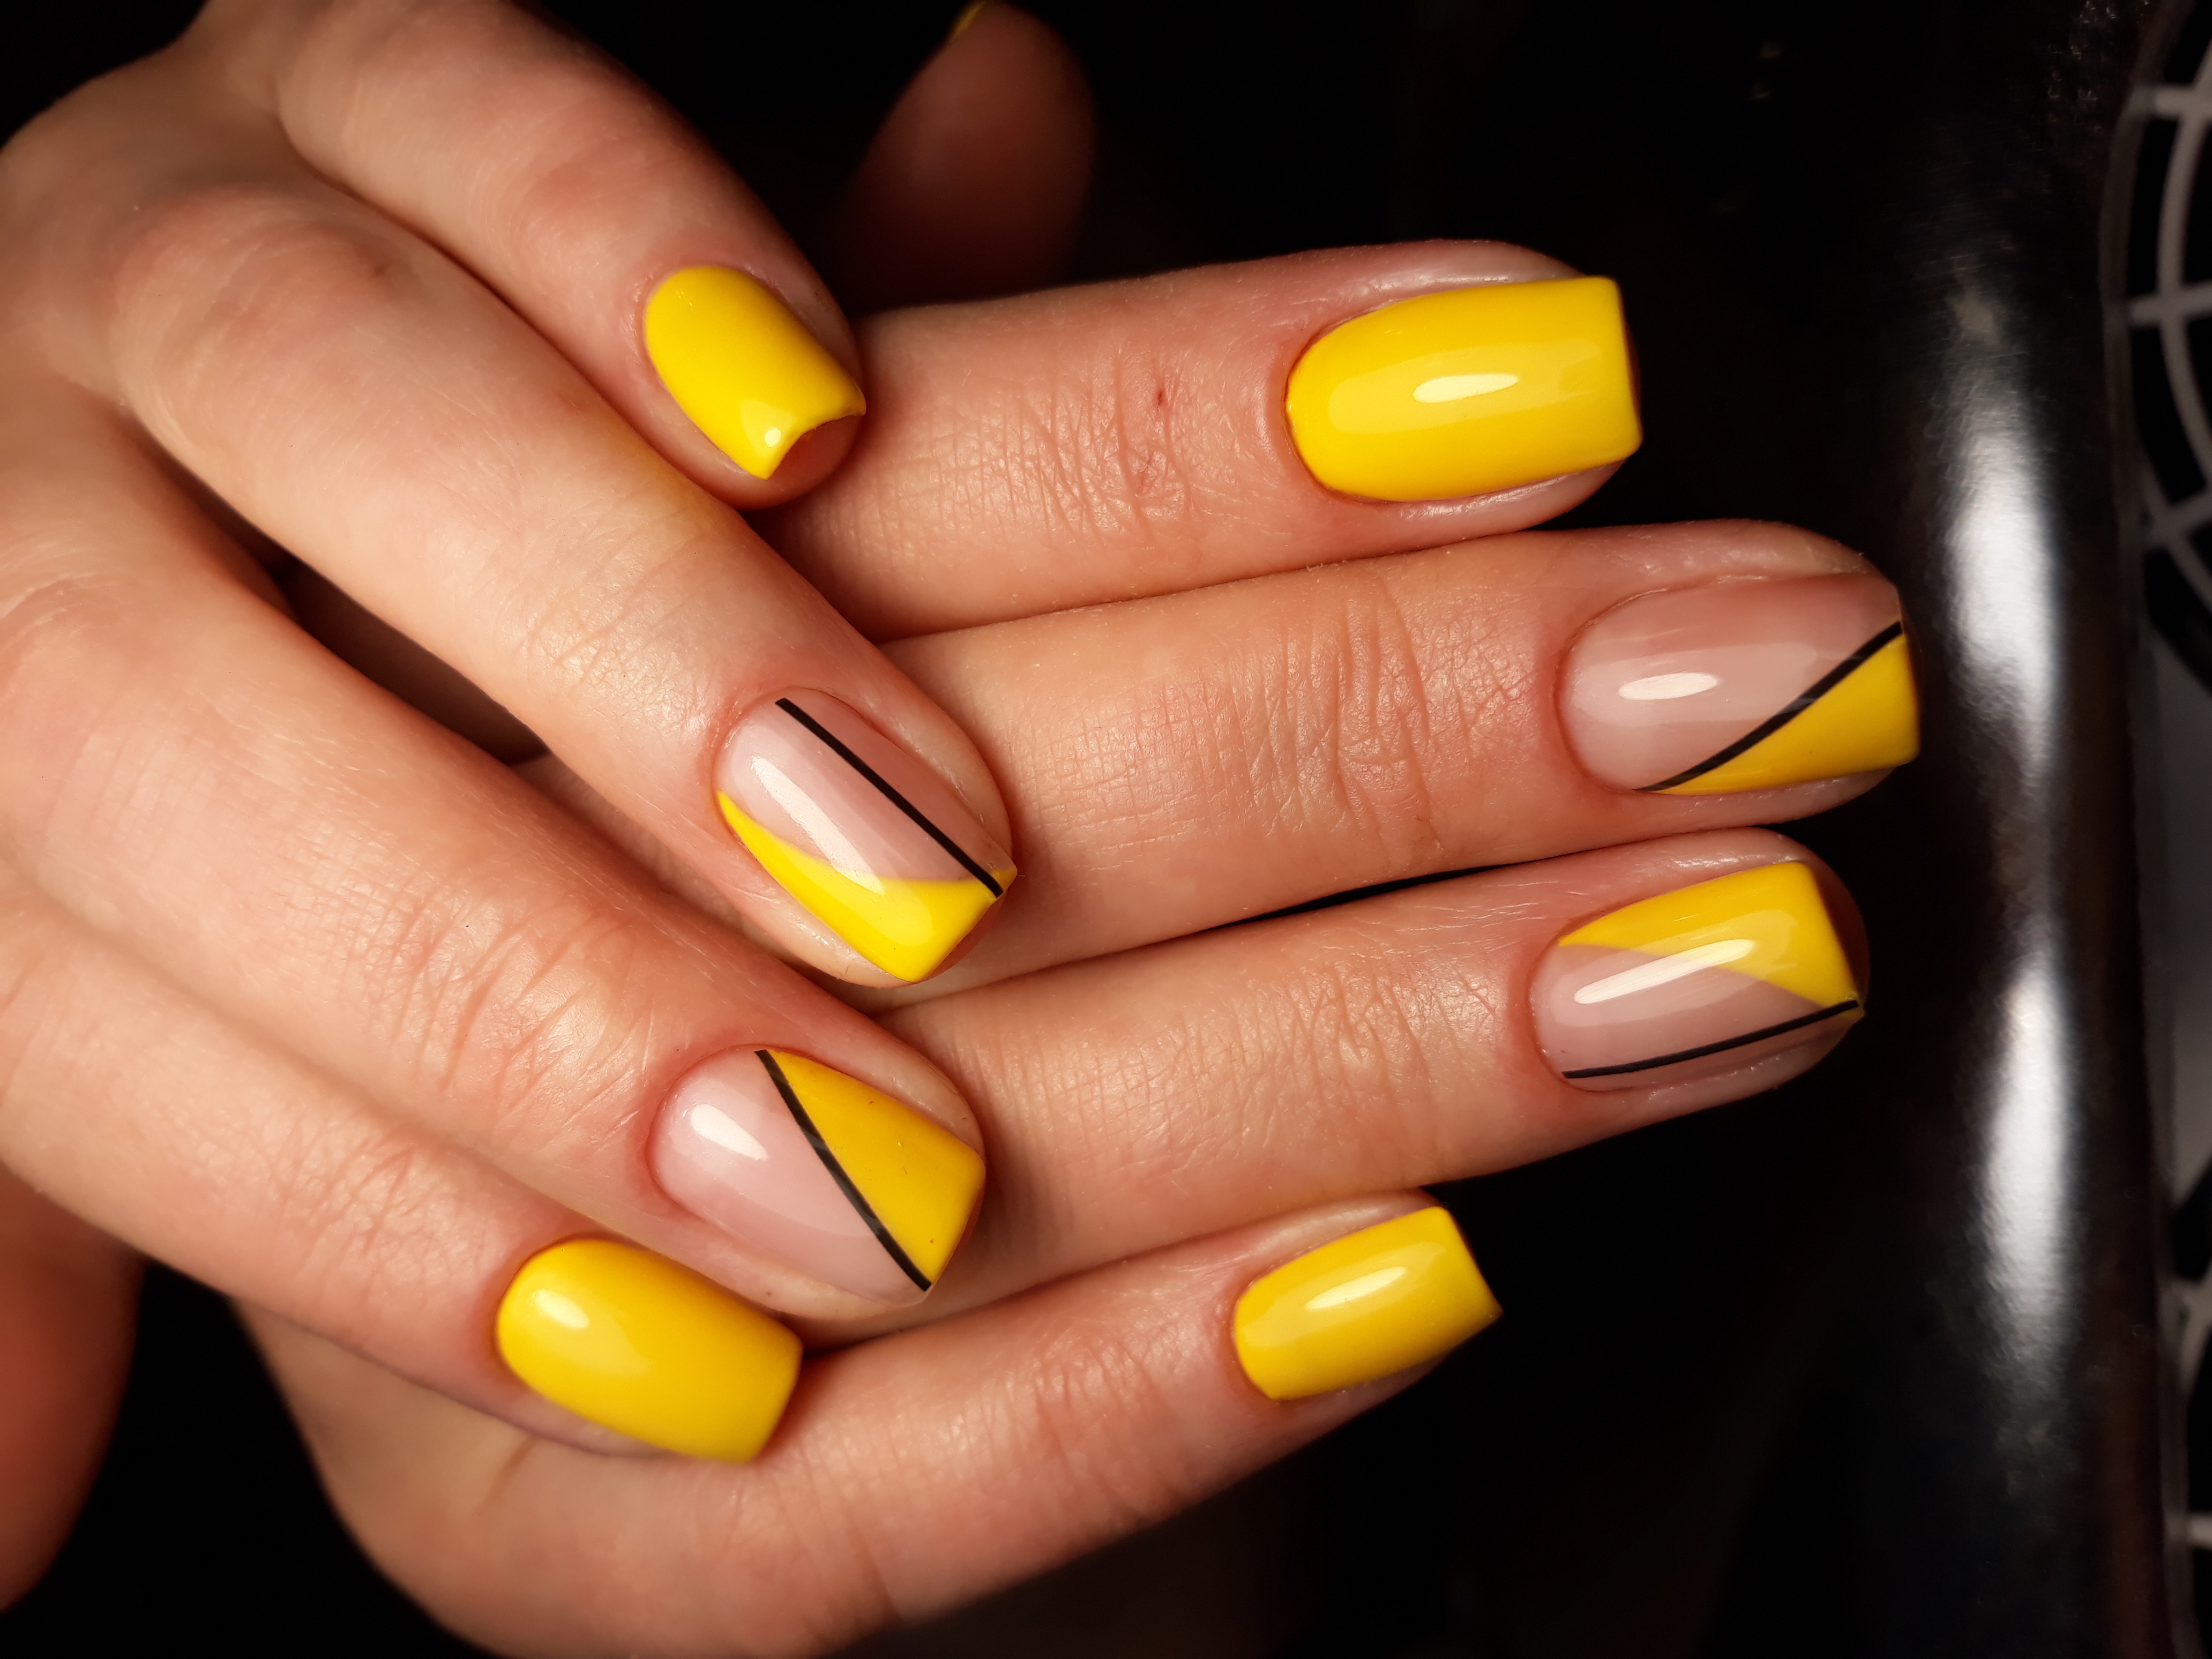 Геометрический маникюр в желтом цвете на короткие ногти.